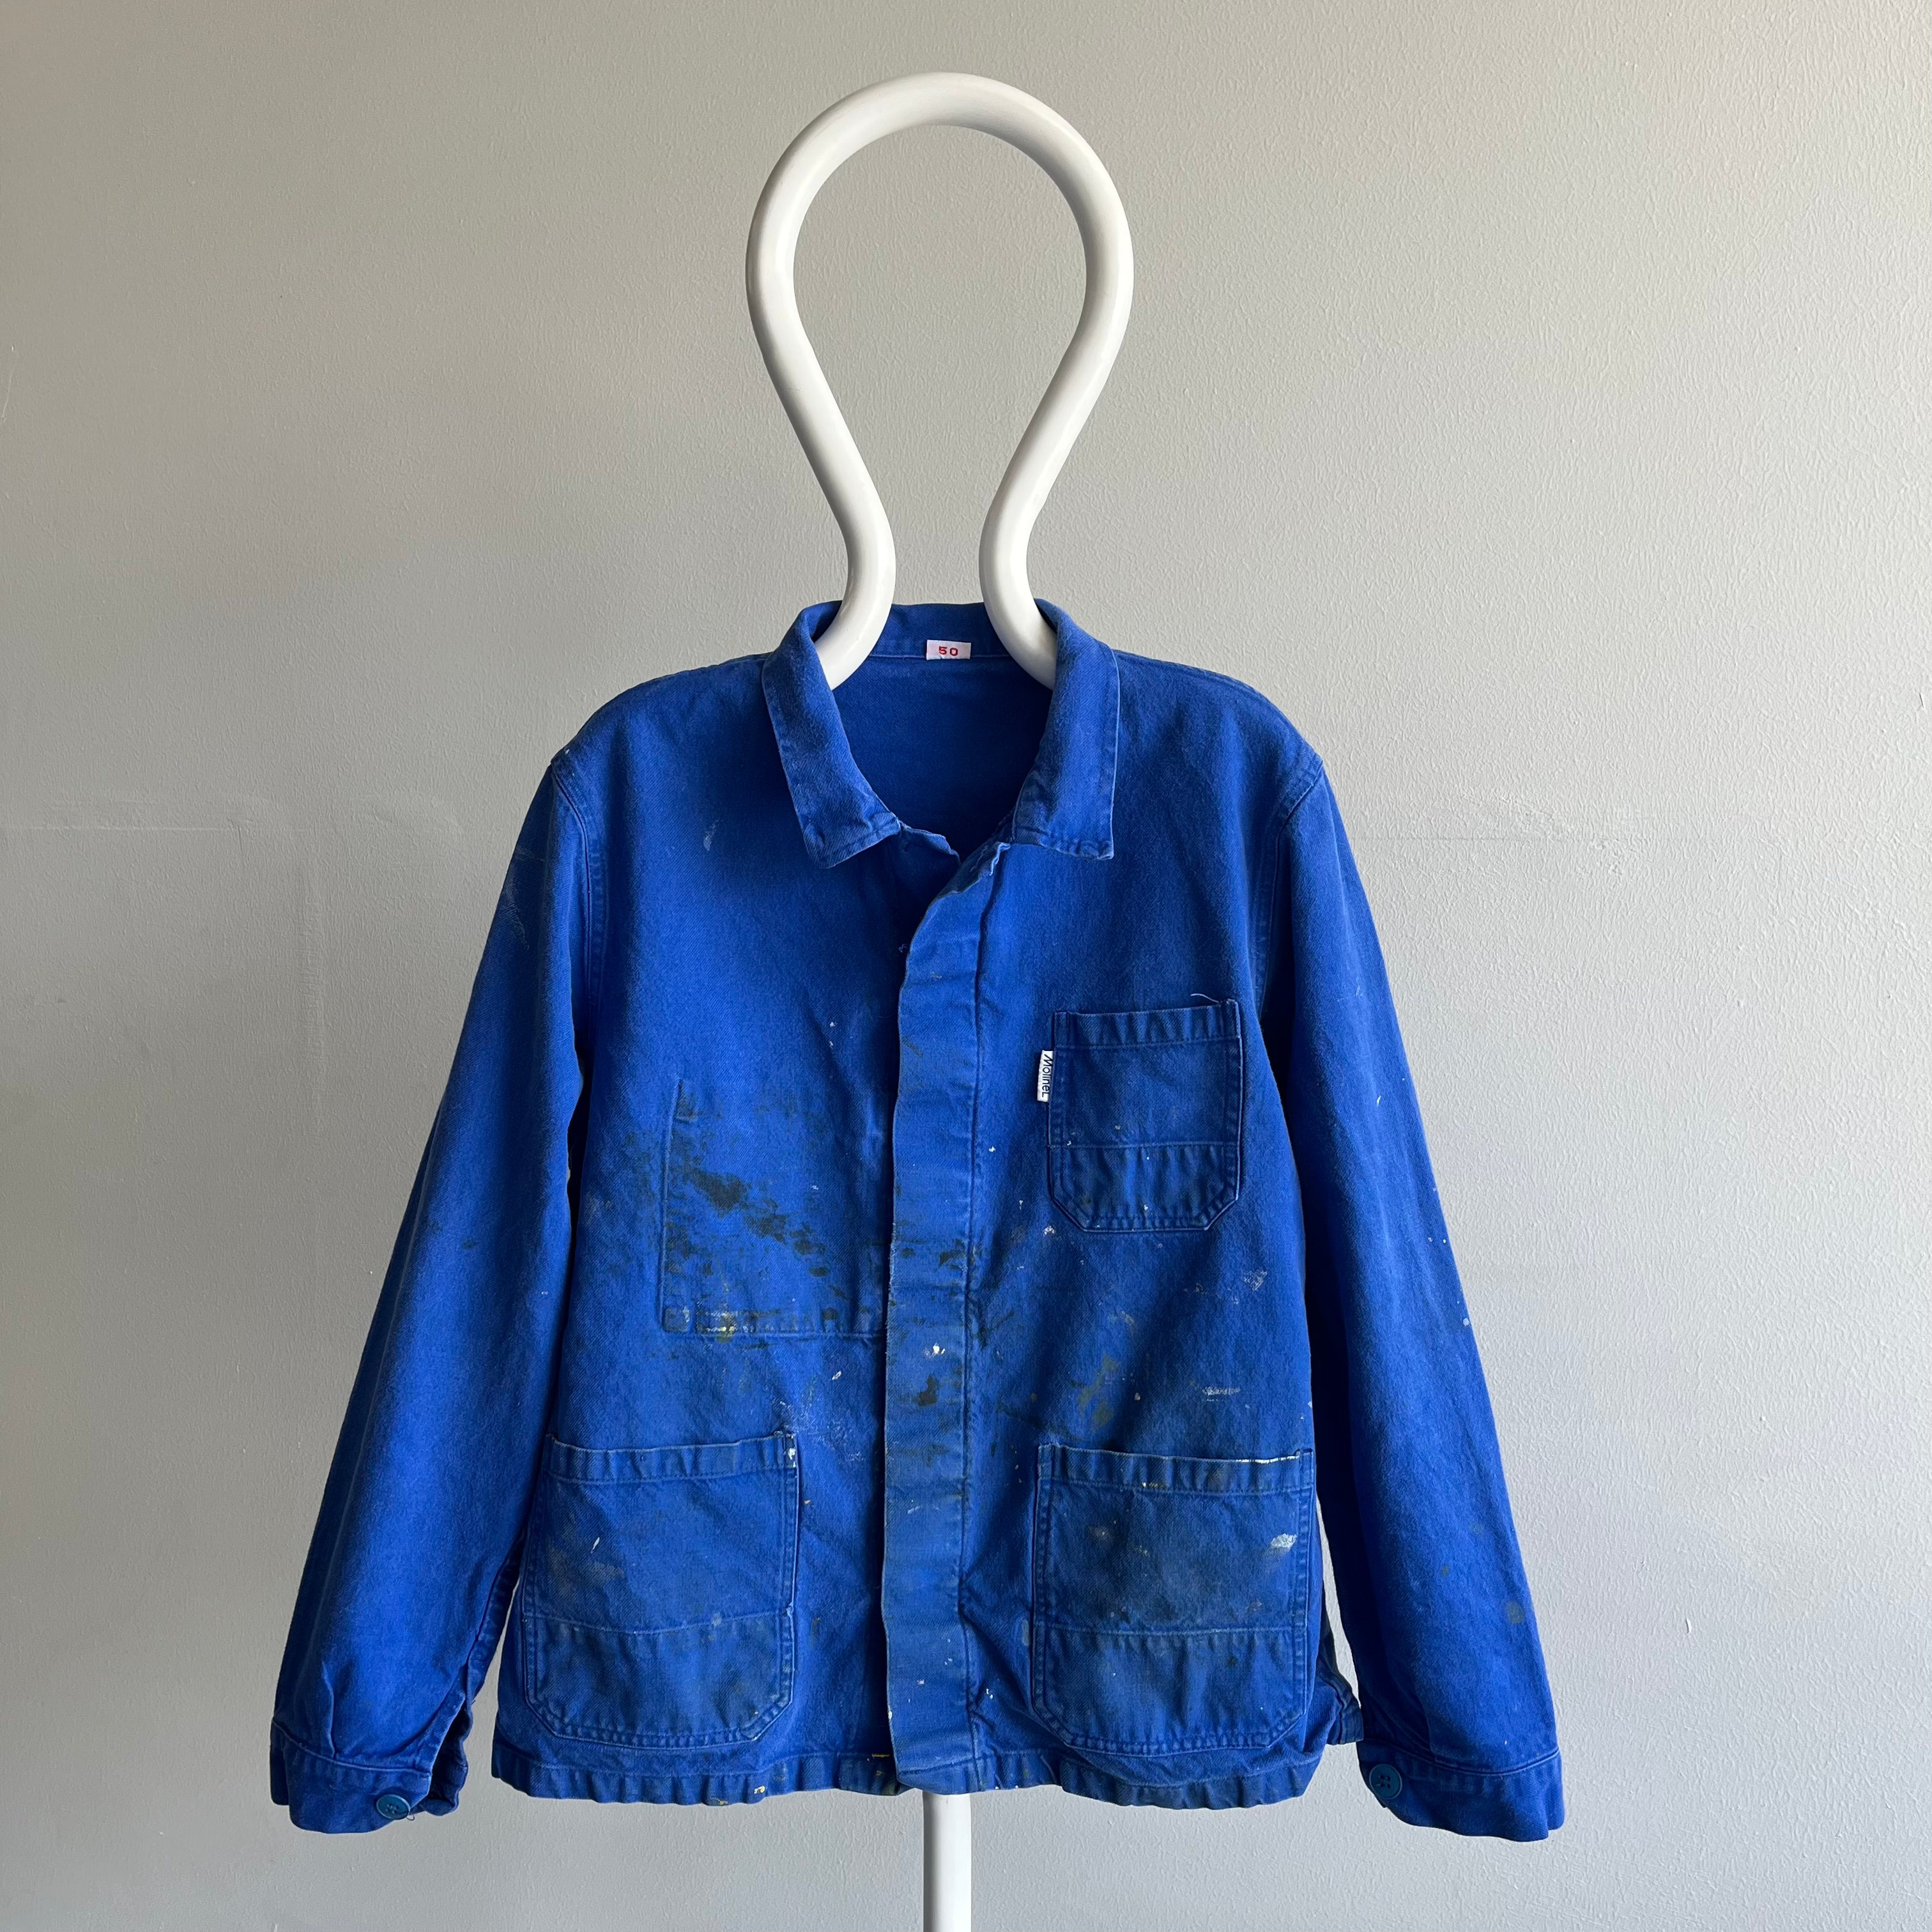 1990s Molinel French Workwear Chore Coat - 50